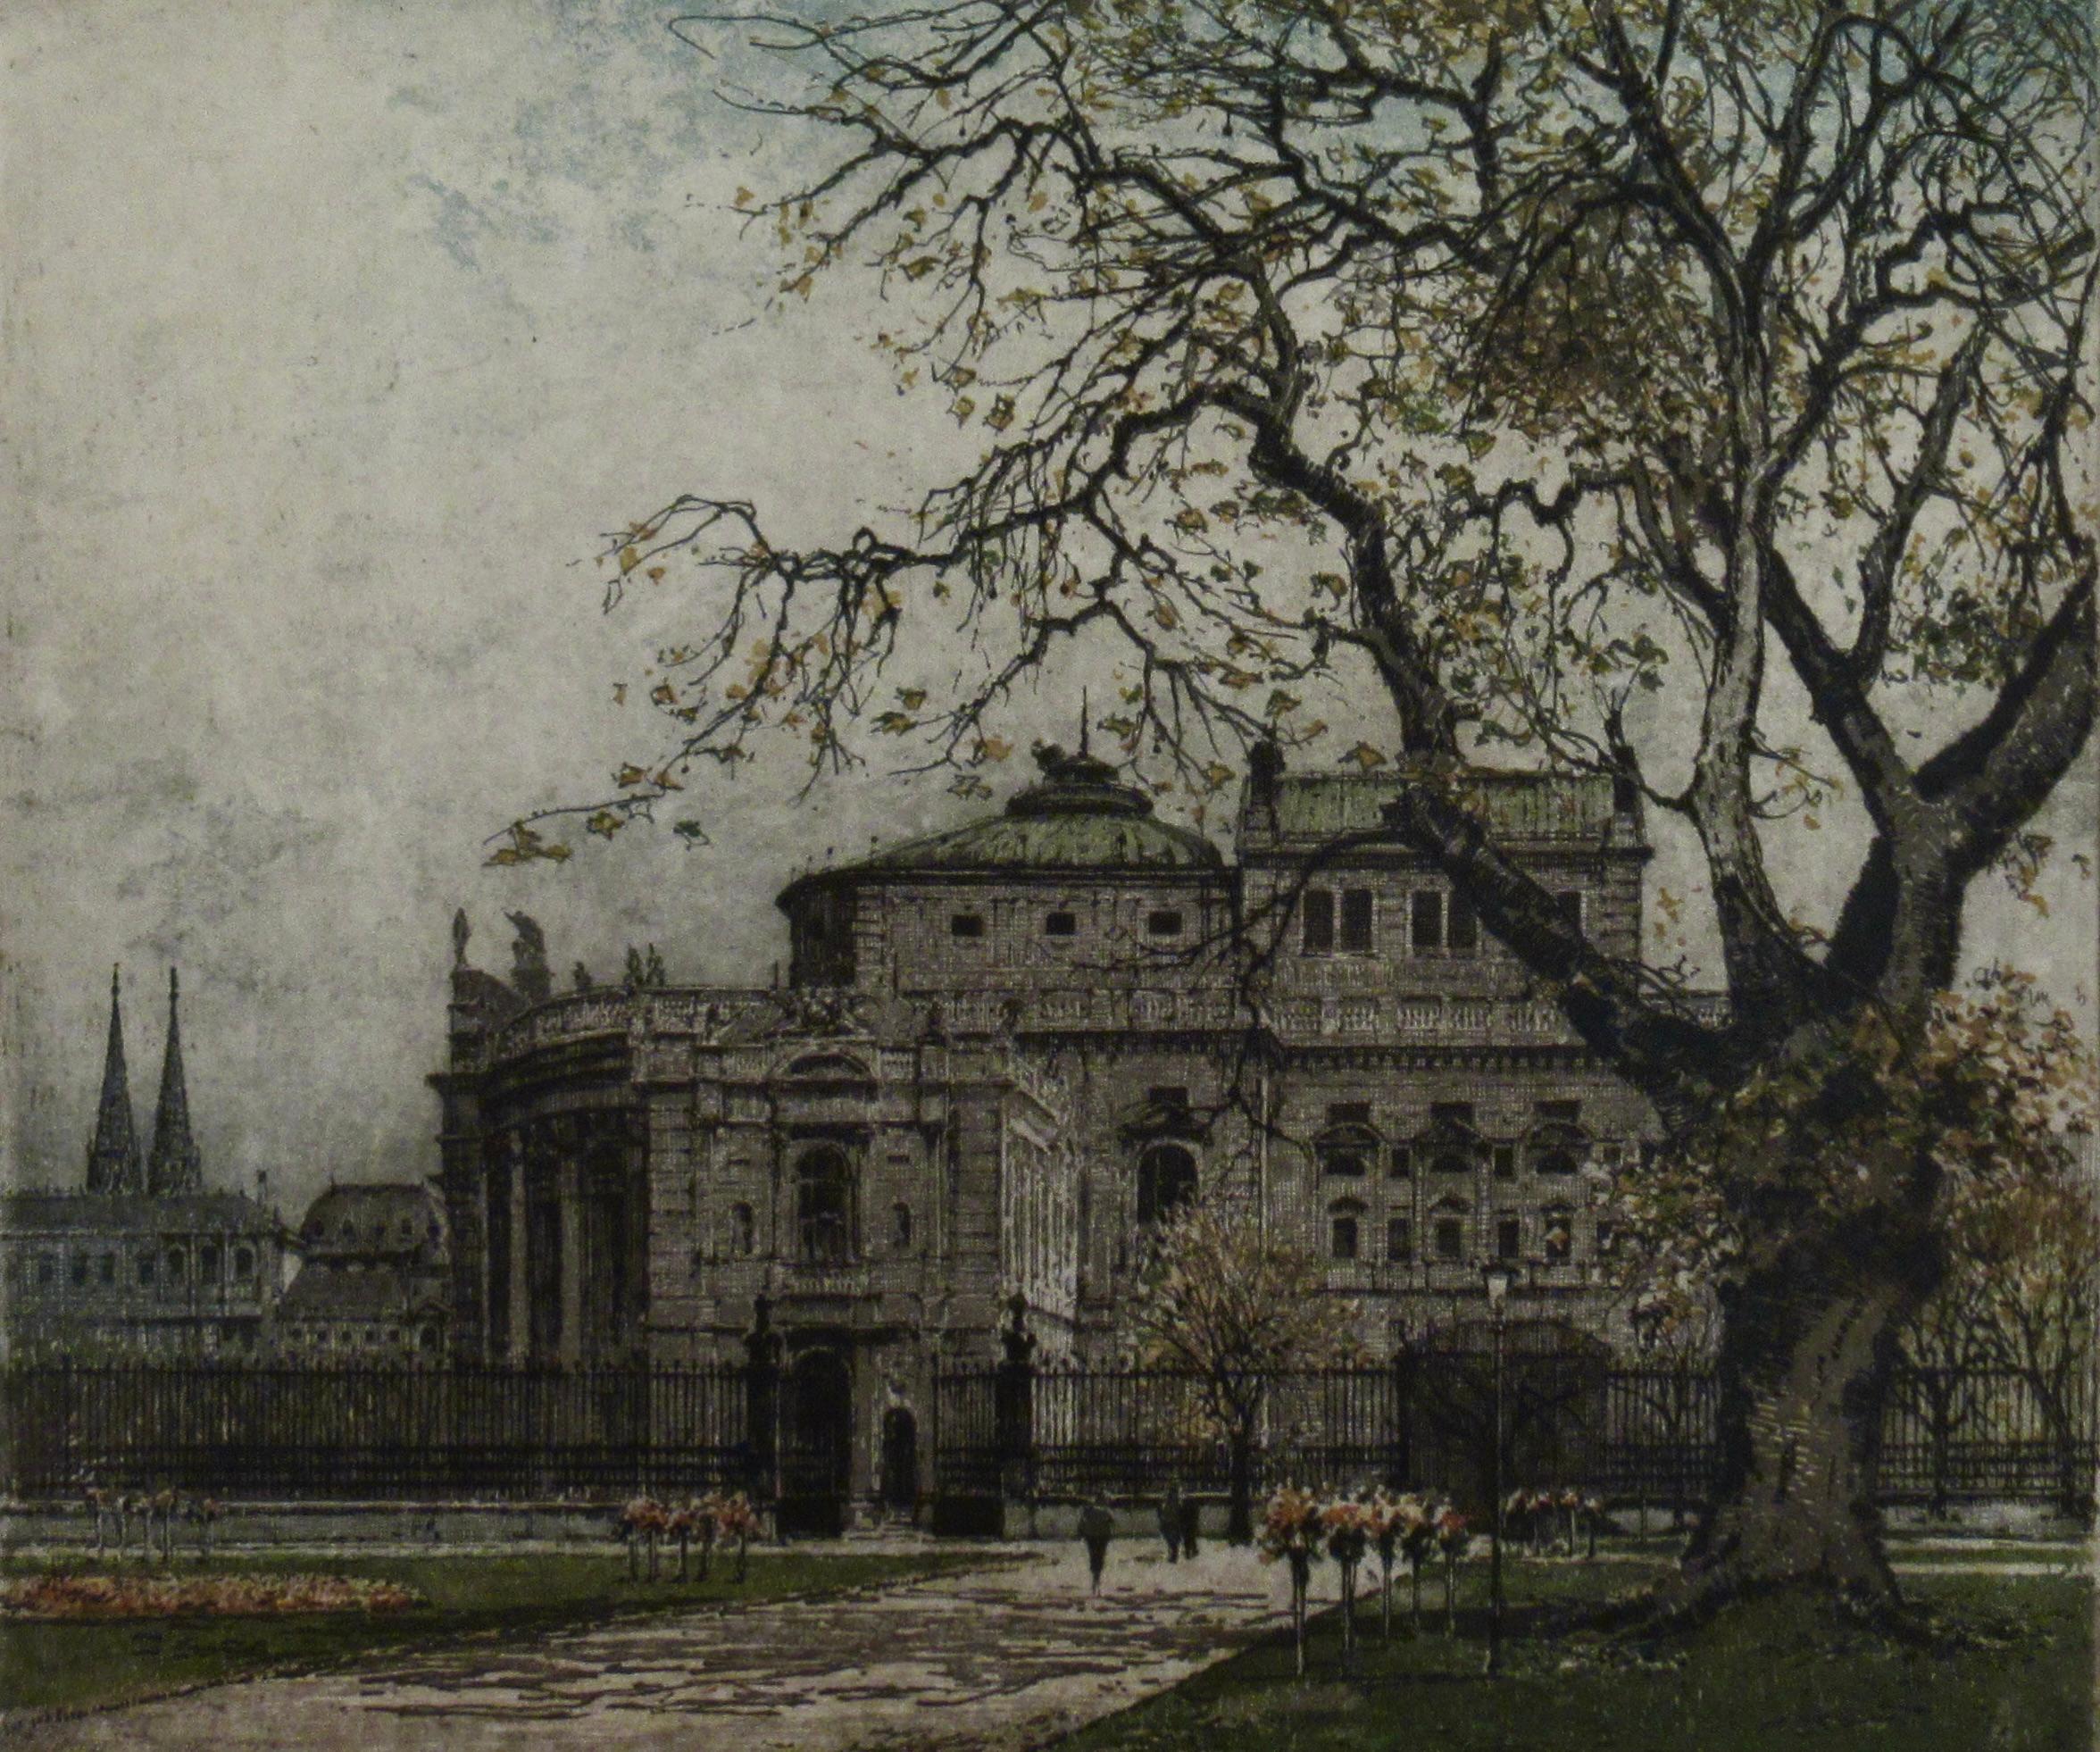 Burgtheater, Vienna - Realist Print by Josef Eidenberger